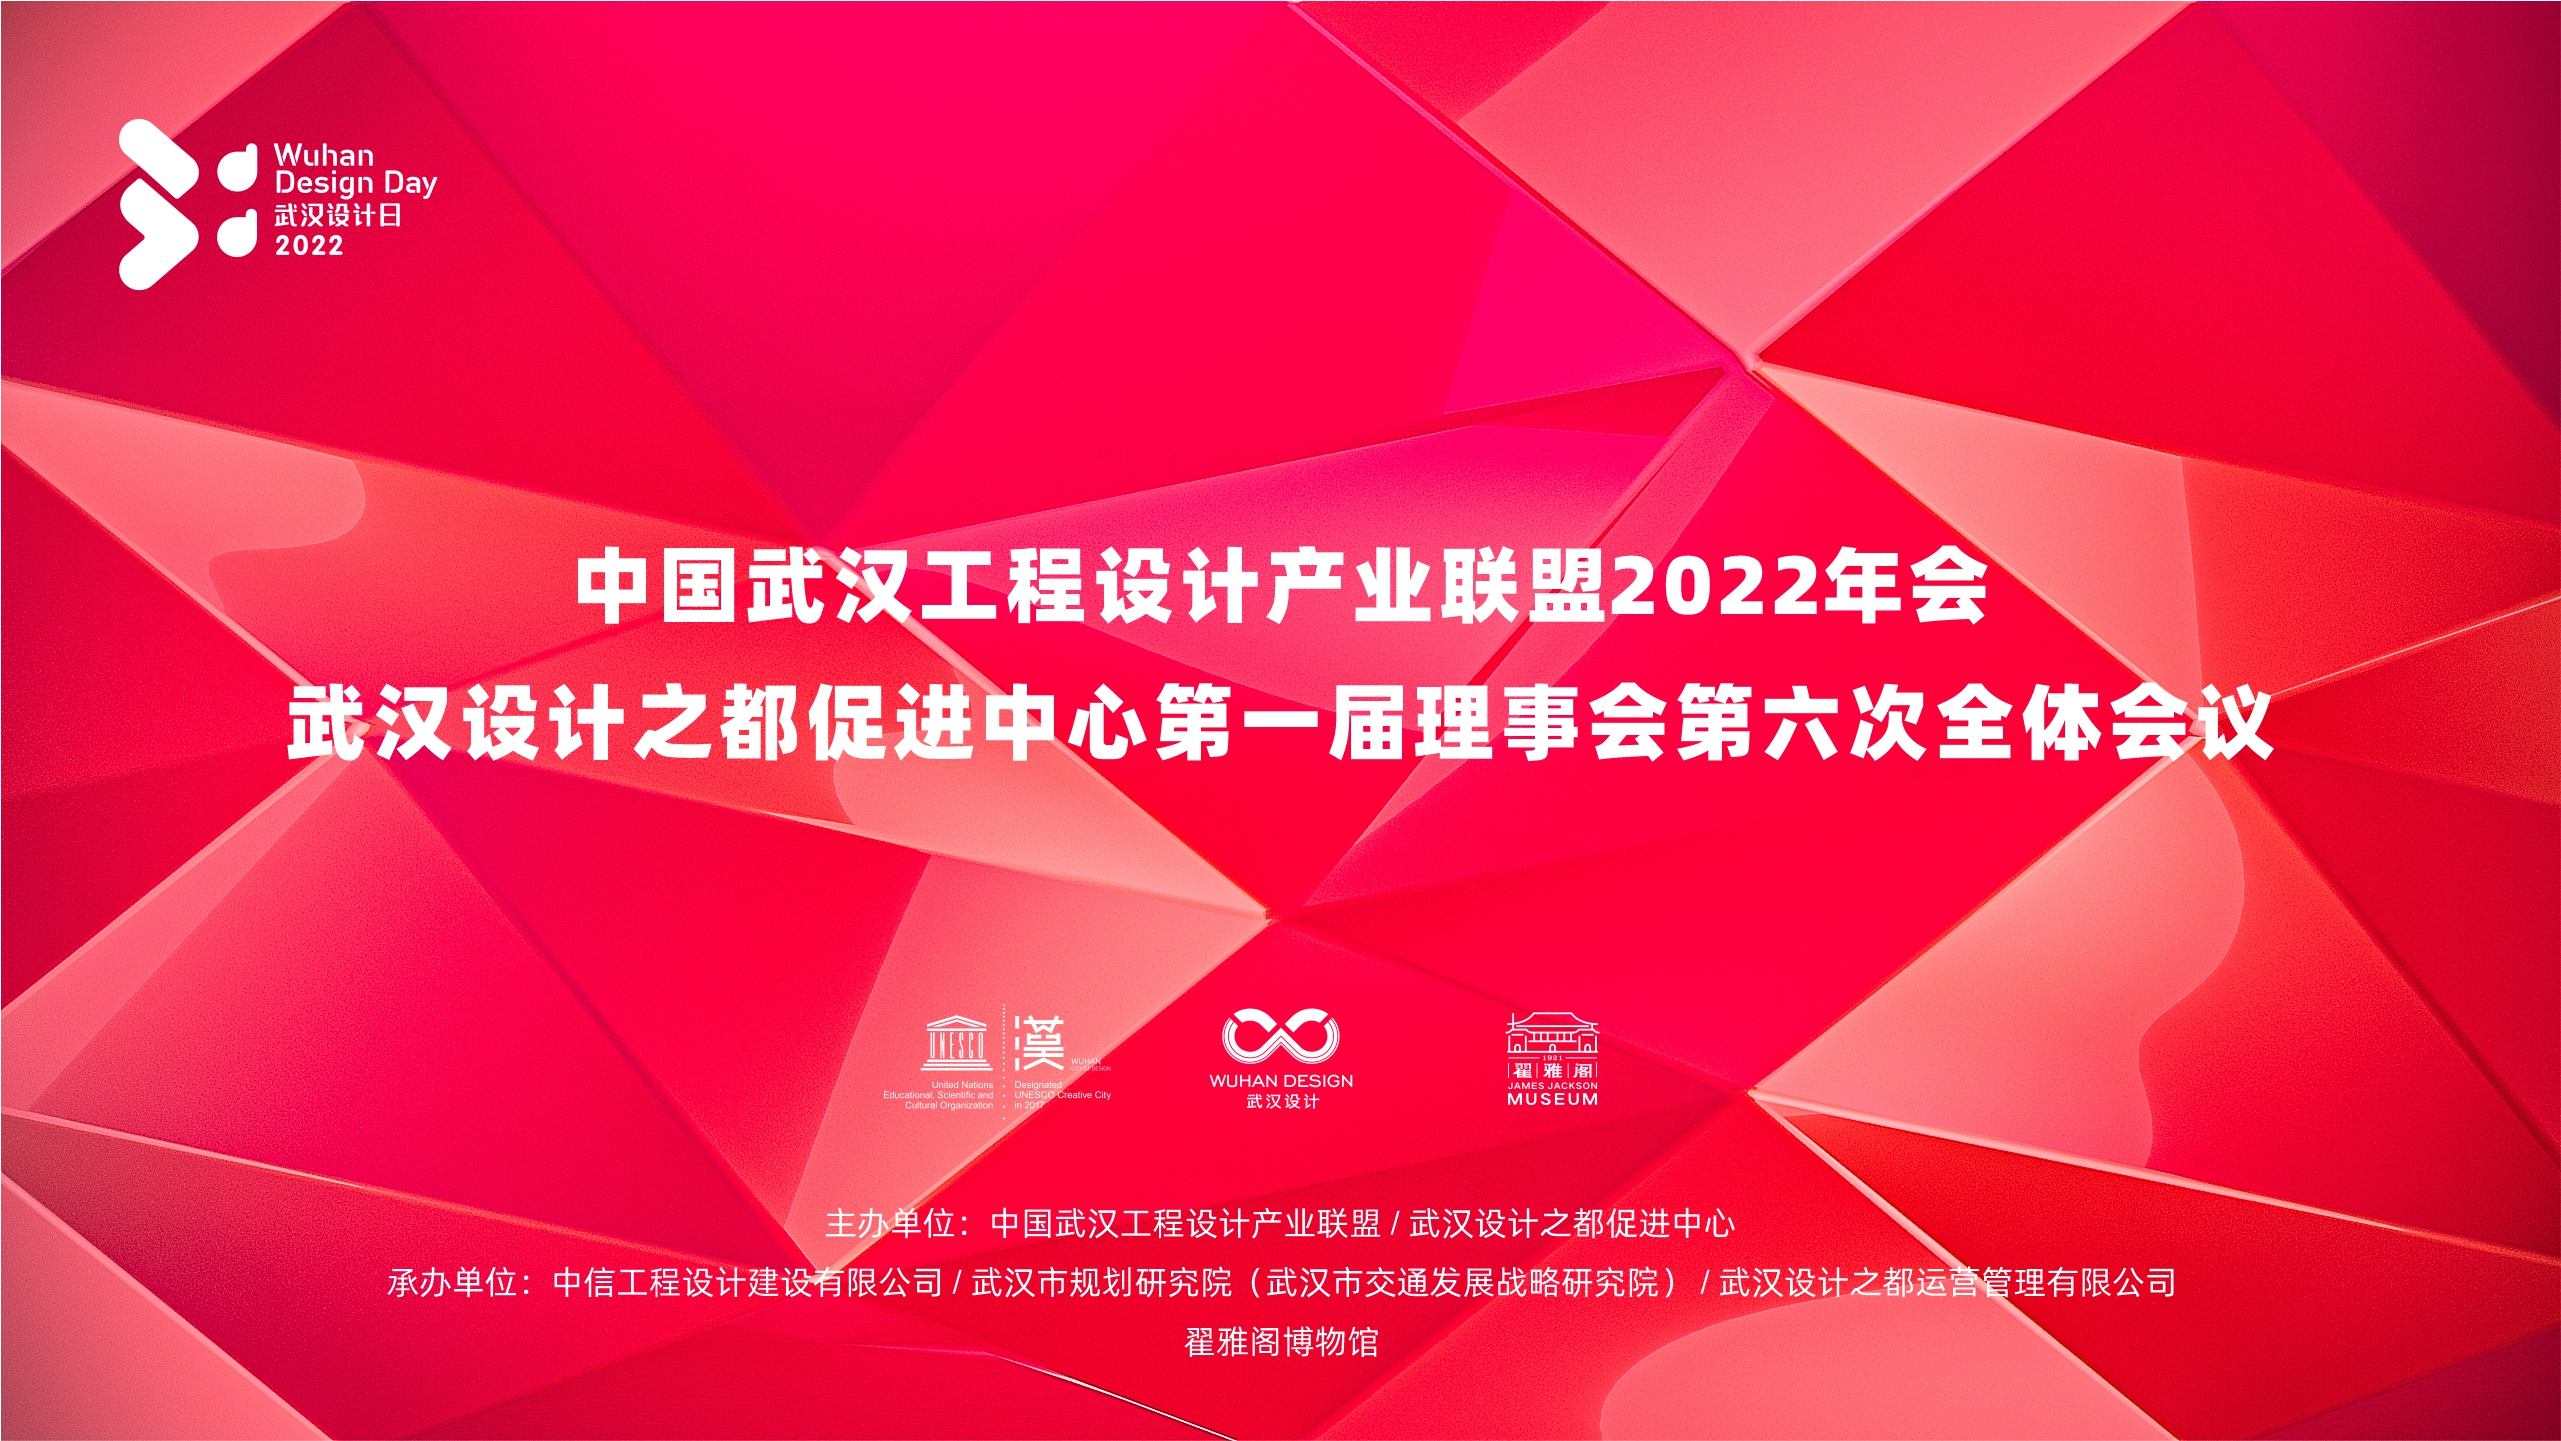 武汉设计之都促进中心第一届理事会第六次全体大会和2022年武汉智能建造与智慧城市论坛在翟雅阁如期召开